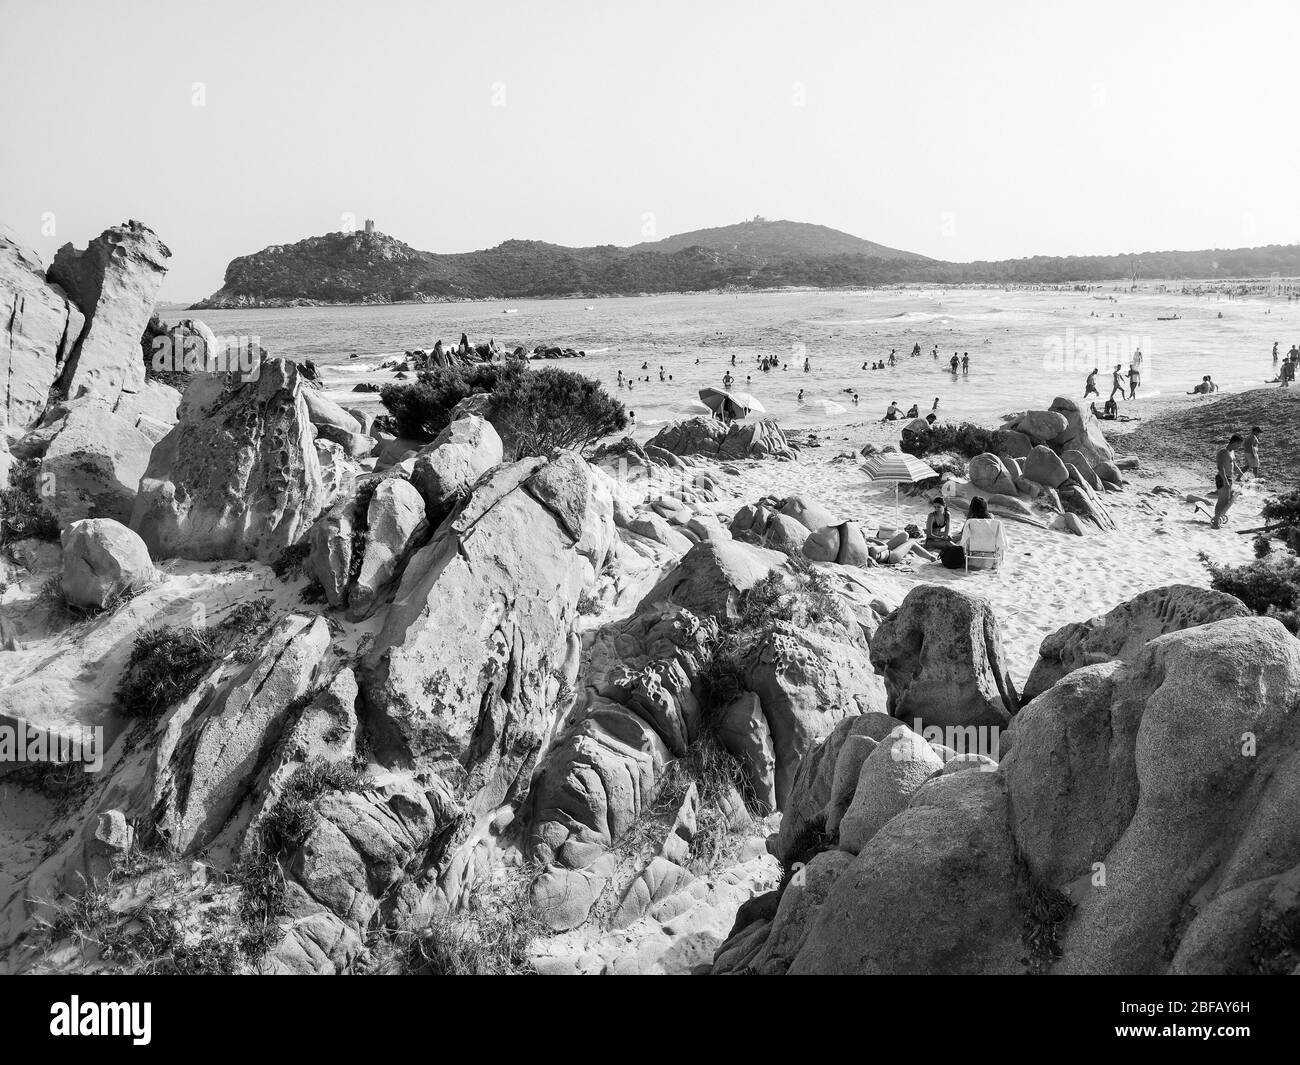 Sardegna, Italia - 7 agosto 2019: Turisti e bagnanti sulle spiagge di sabbia e roccia tipiche della Sardegna. Foto Stock